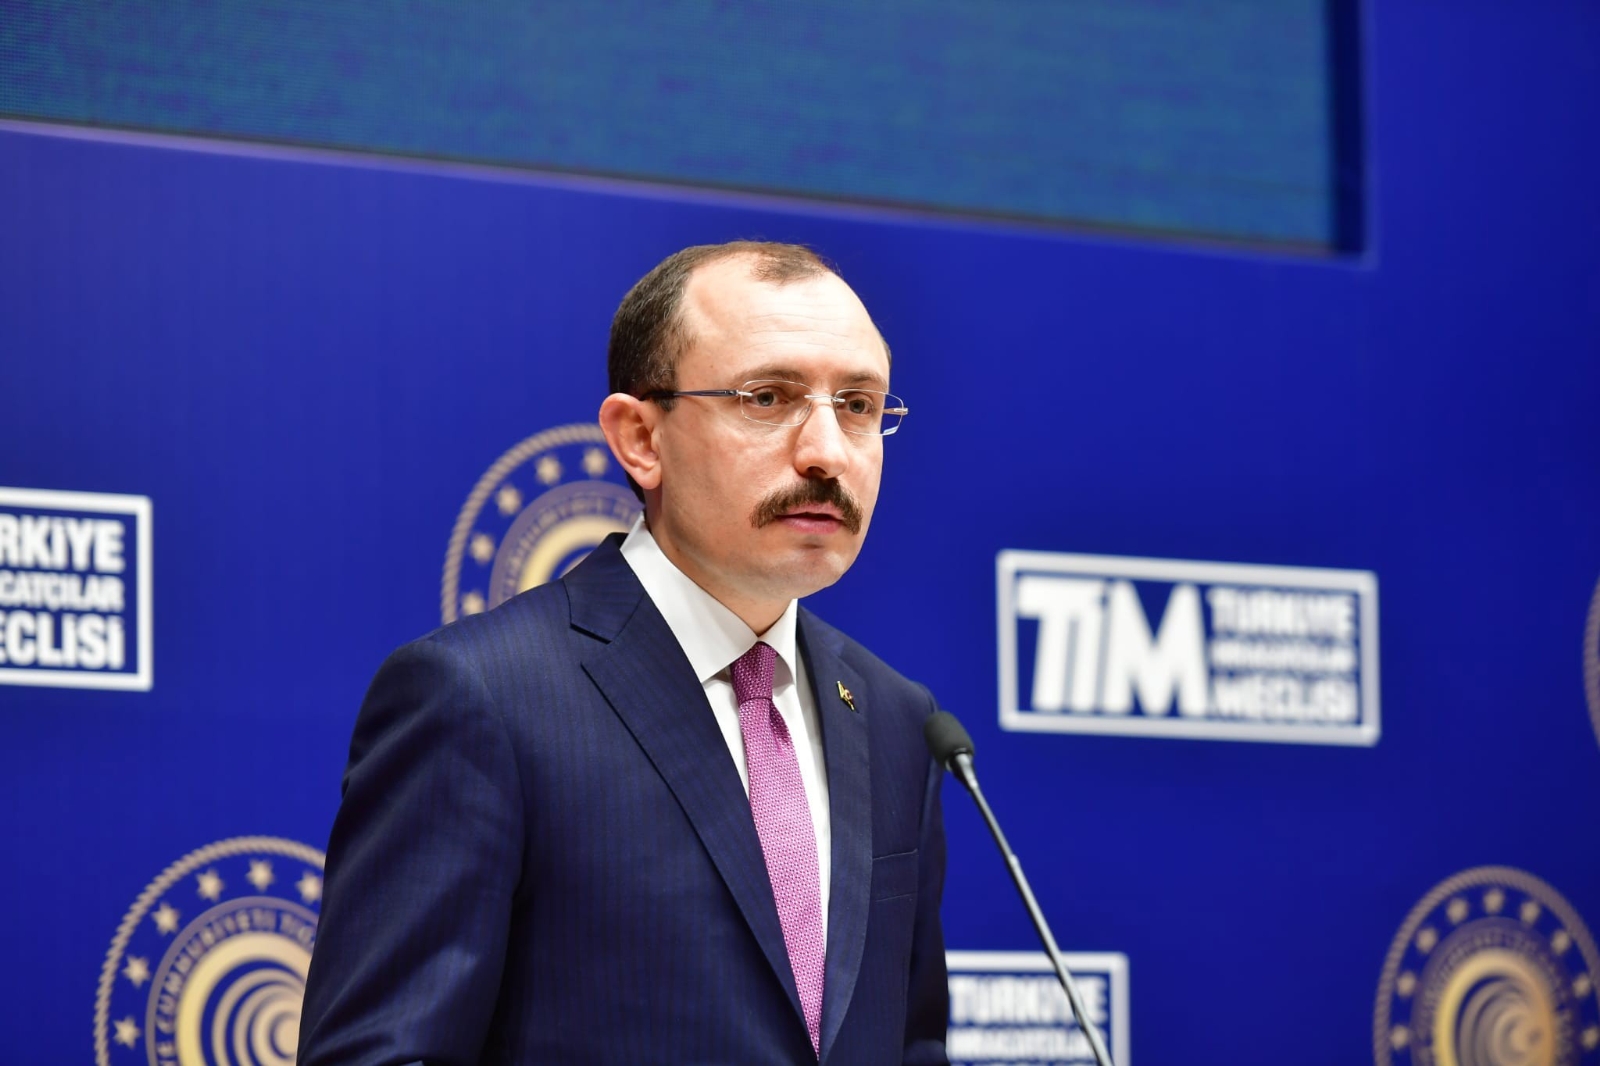 Ticaret Bakanı Muş: “Türkiye, AB ile ortaklık ilişkisini geliştirmek istiyor”